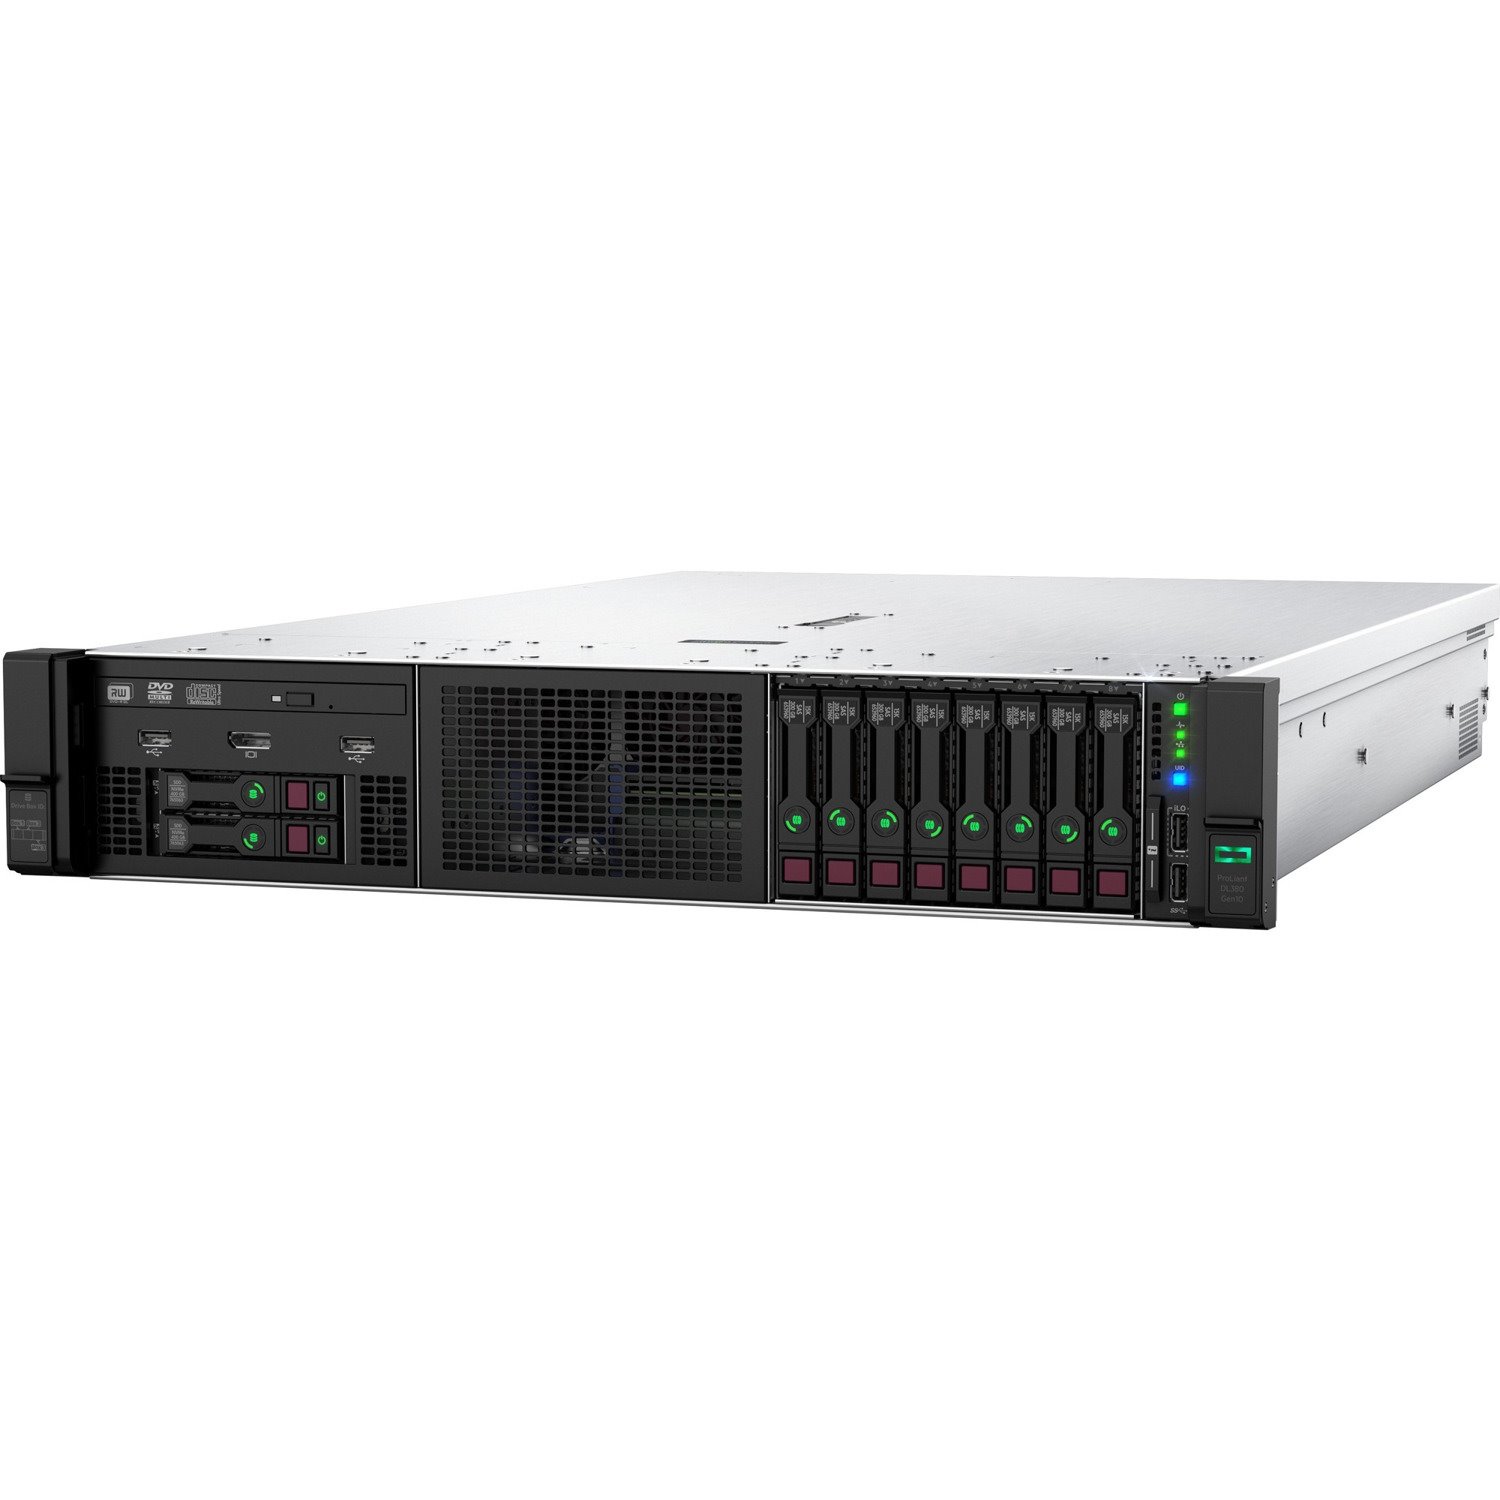 HPE ProLiant DL380 G10 2U Rack Server - 1 x Intel Xeon Silver 4215R 3.20 GHz - 32 GB RAM - Serial ATA/600, 12Gb/s SAS Controller